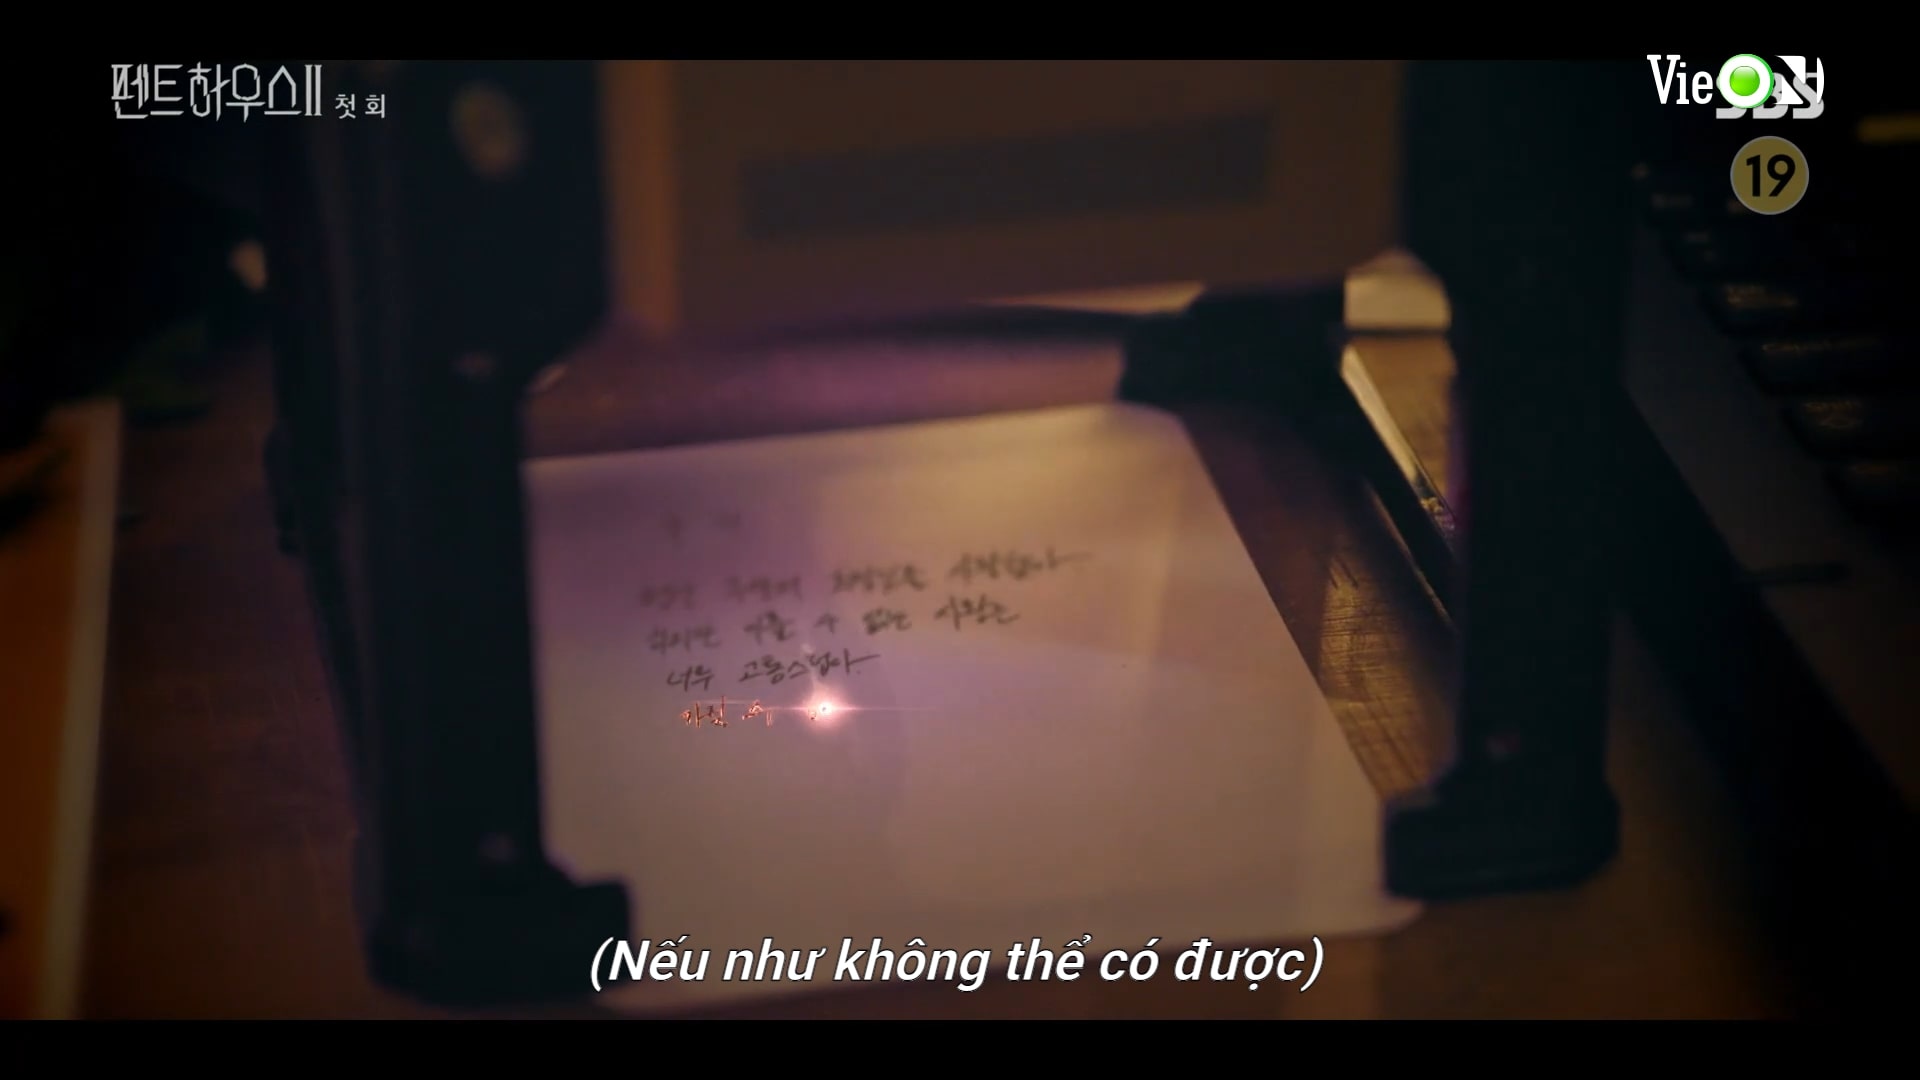 Logan Lee đã dùng máy giả mạo chữ viết để viết thư tuyệt mệnh hộ bà quản gia Yang.